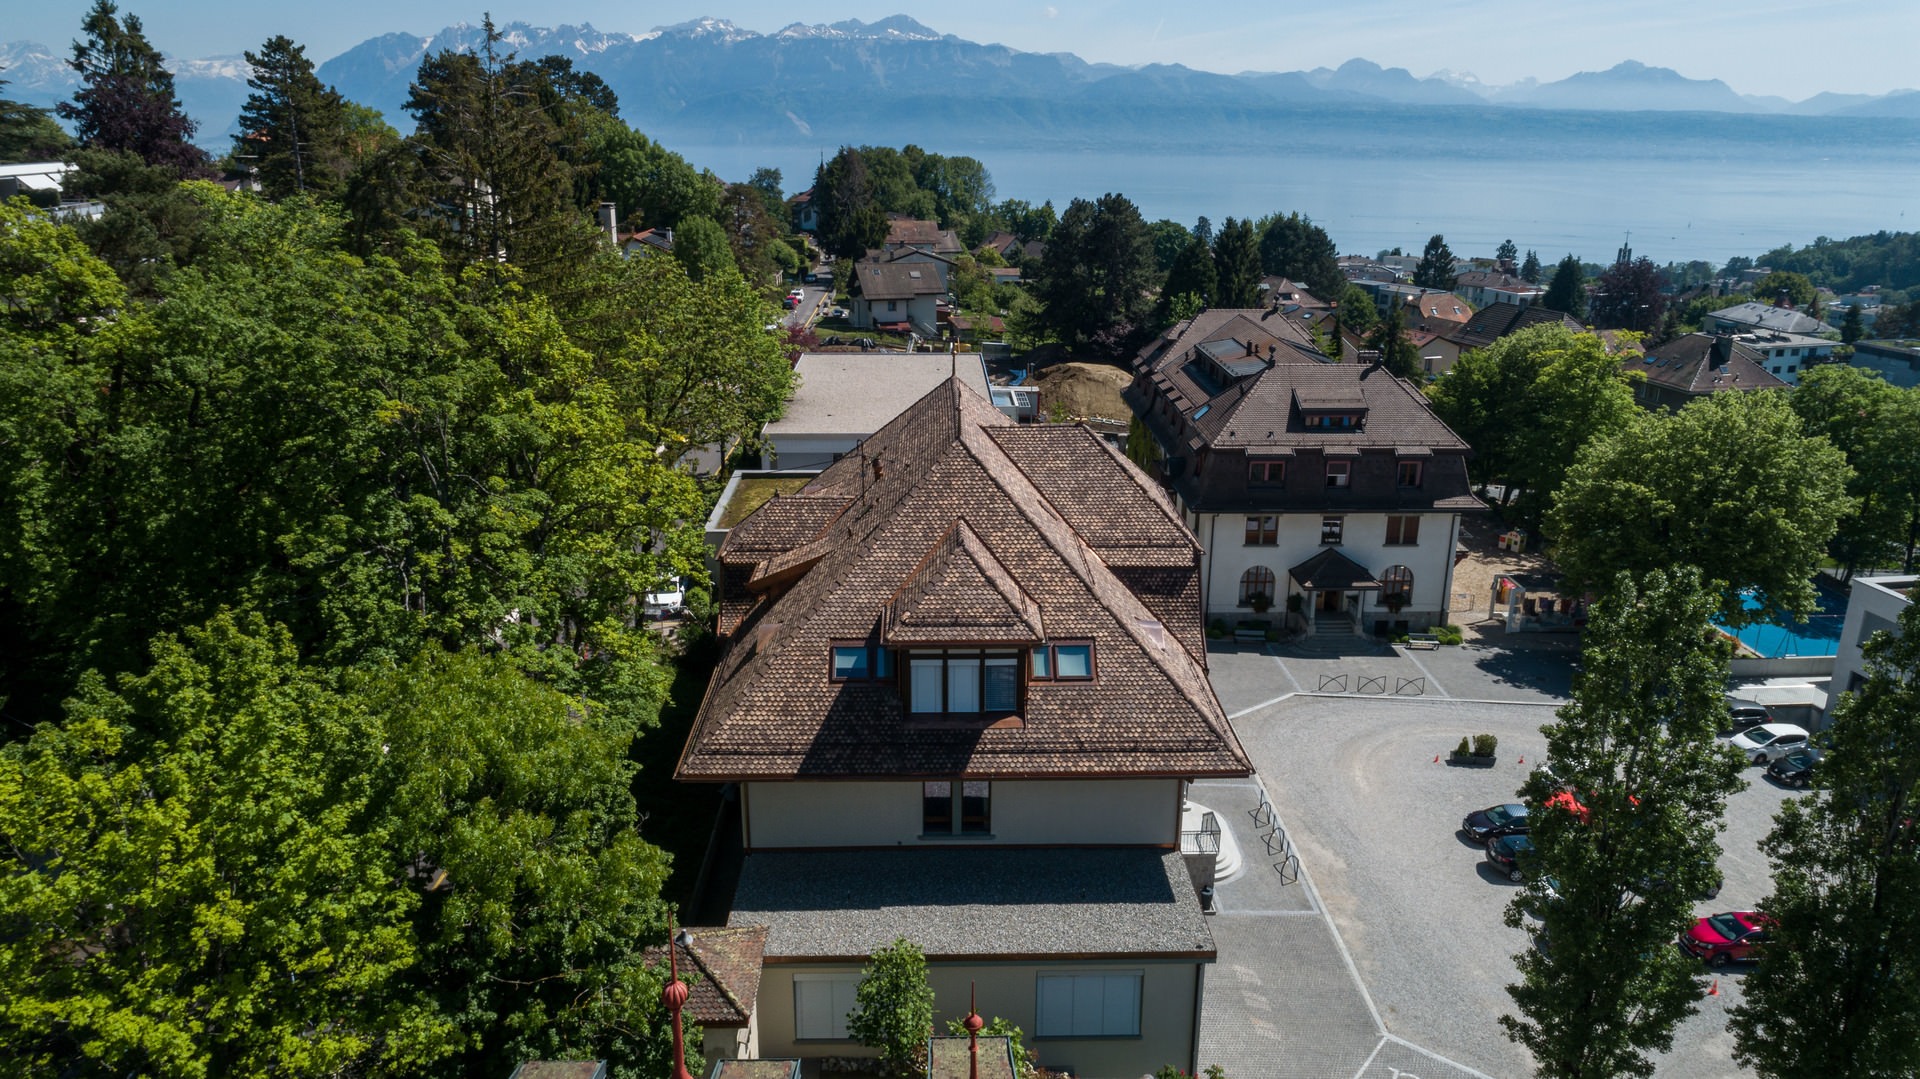 ENSR Lausanne Dachsanierung 2019 mit Biberschwanzziegel 17/38 l'ancienne altbraun nuanciert von Gasser Ceramic